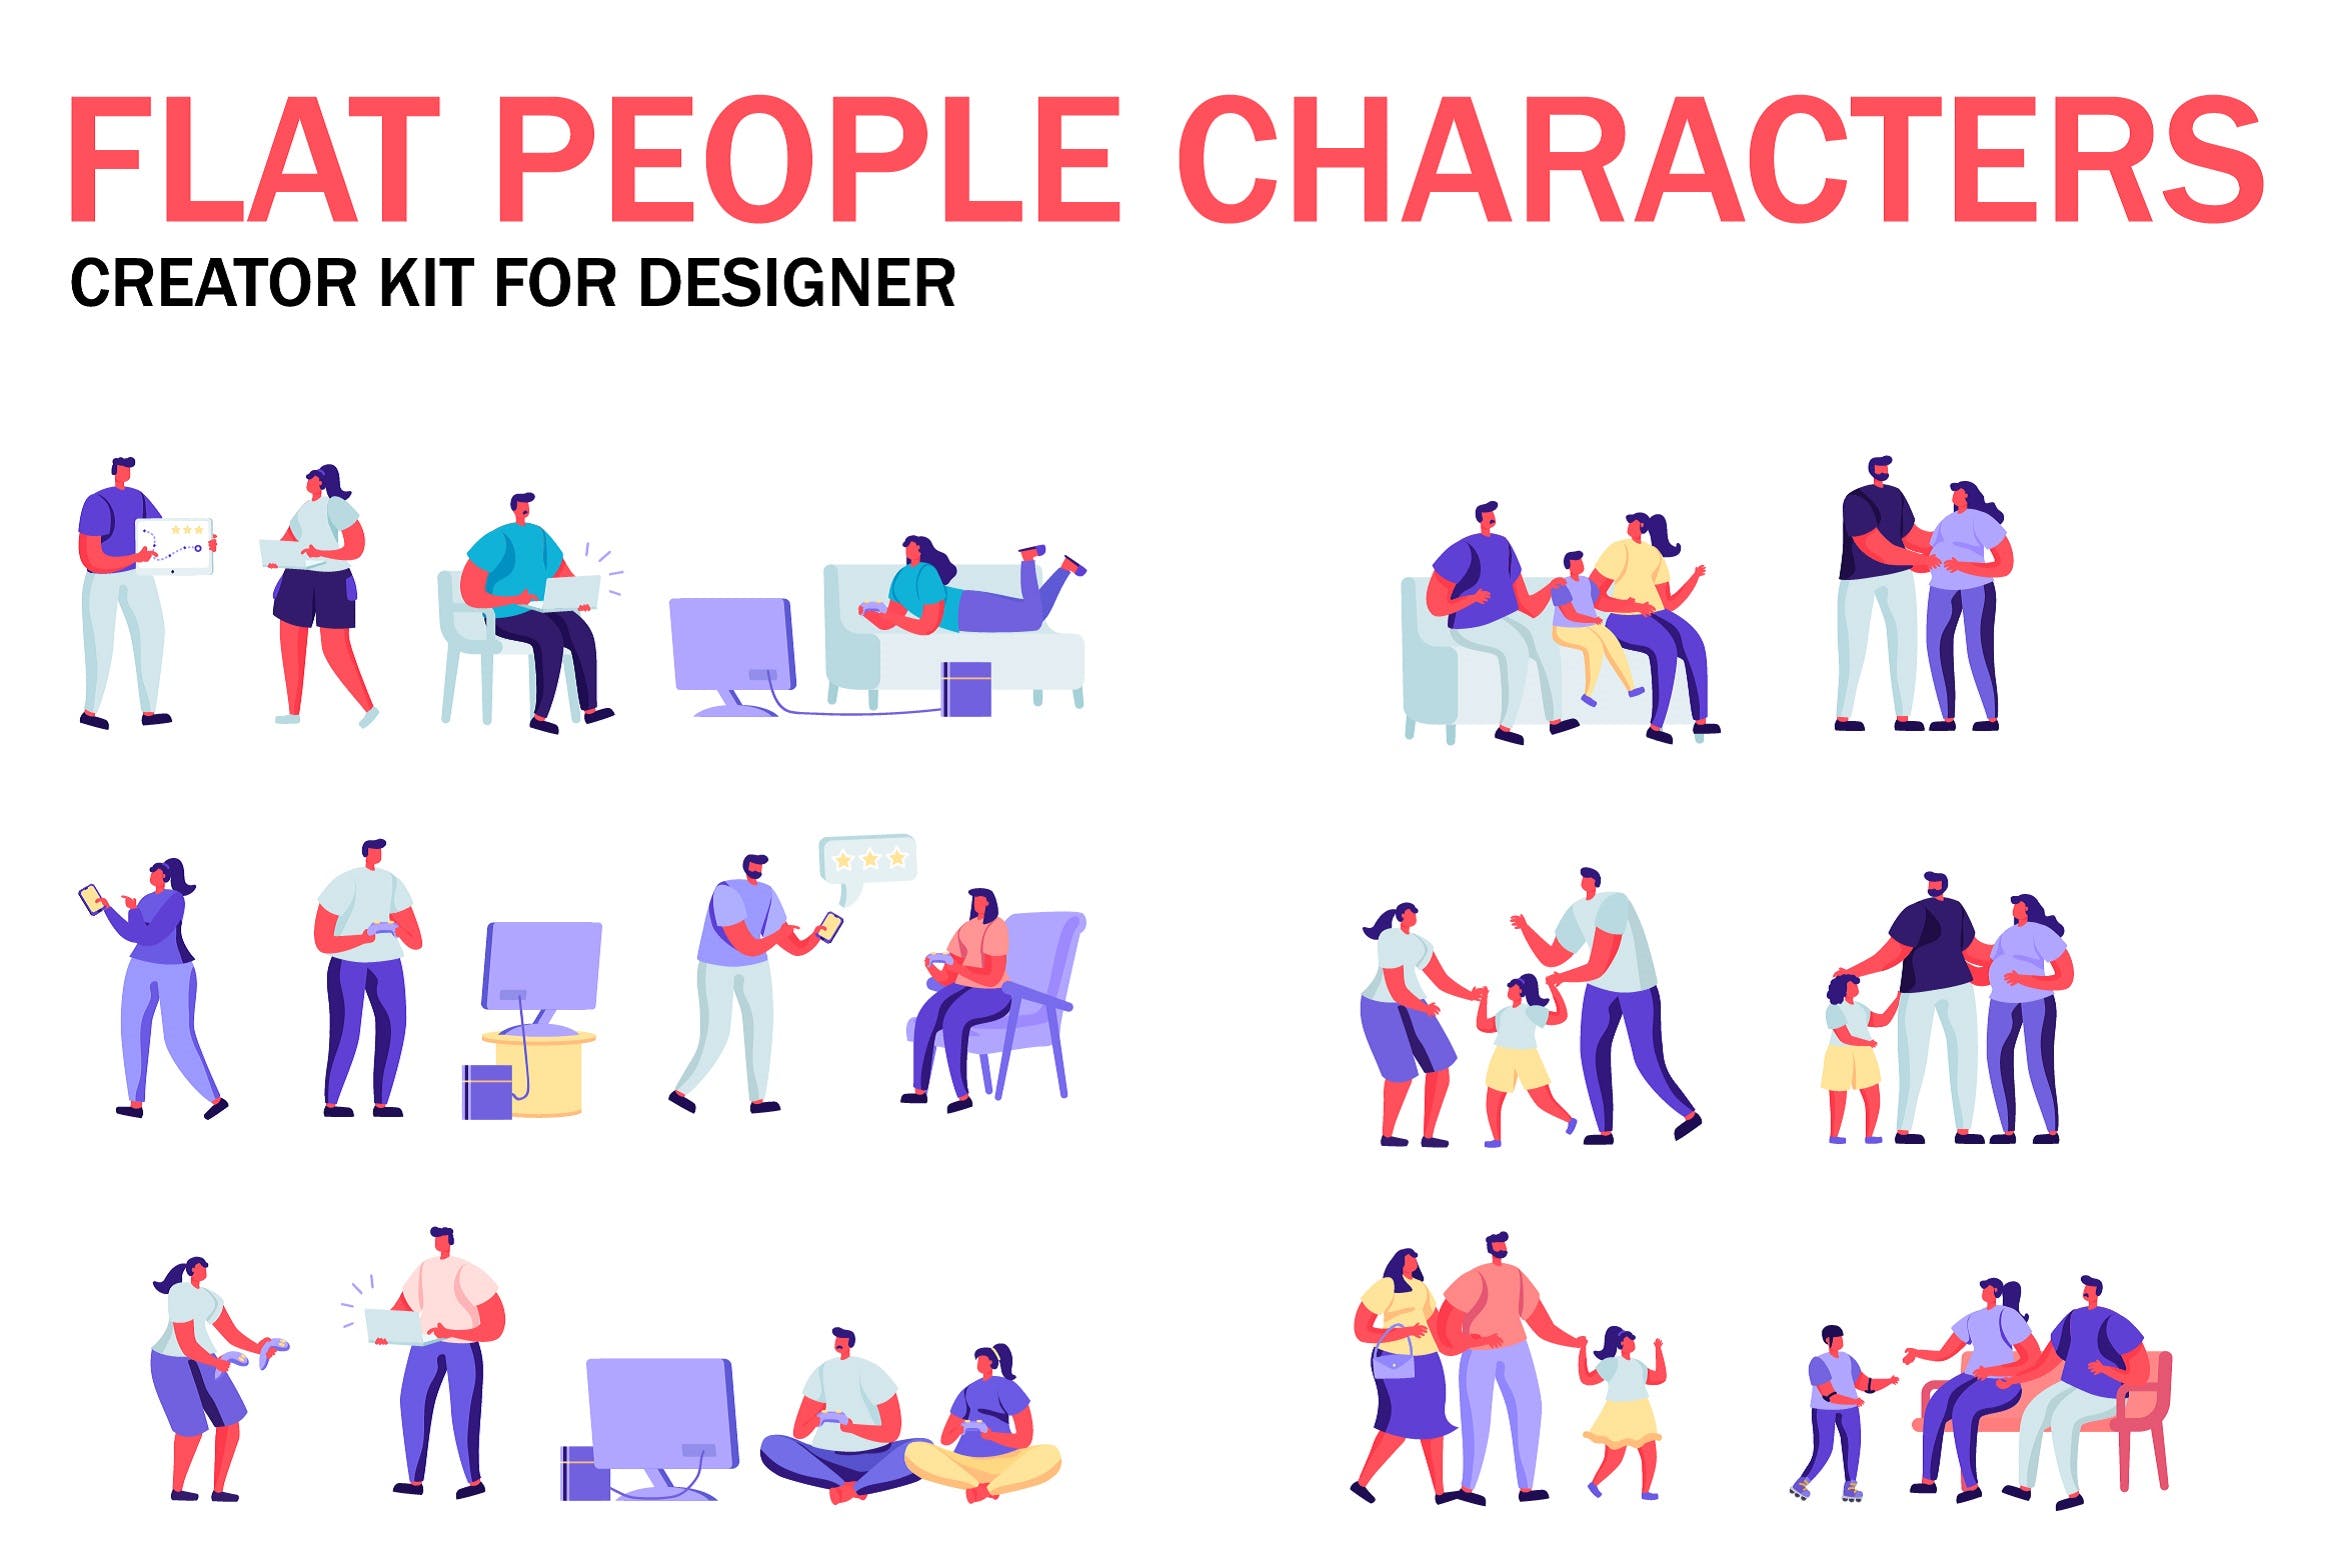 扁平化设计风格虚拟人物角色图形设计工具包v3 Flat People Character Creator Kit插图